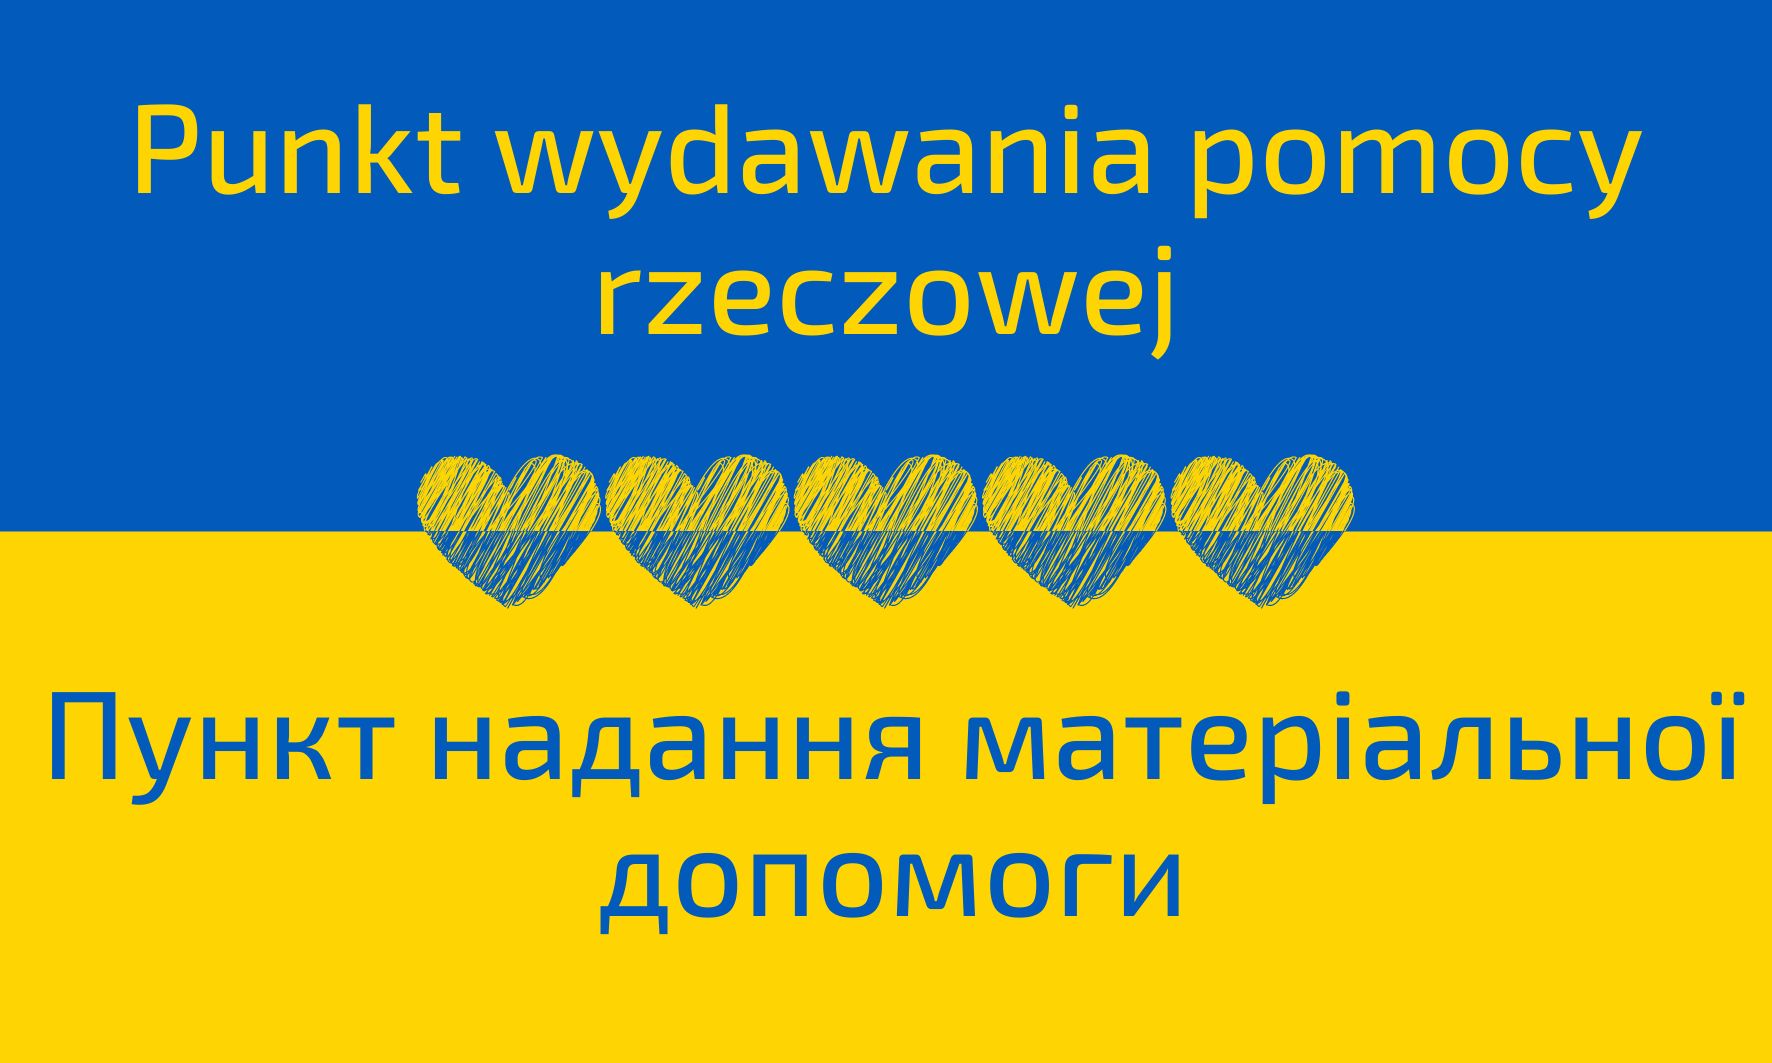 Na tle flagi ukraińskiej napis, informujący o punkcie wydawania pomocy rzeczowej.